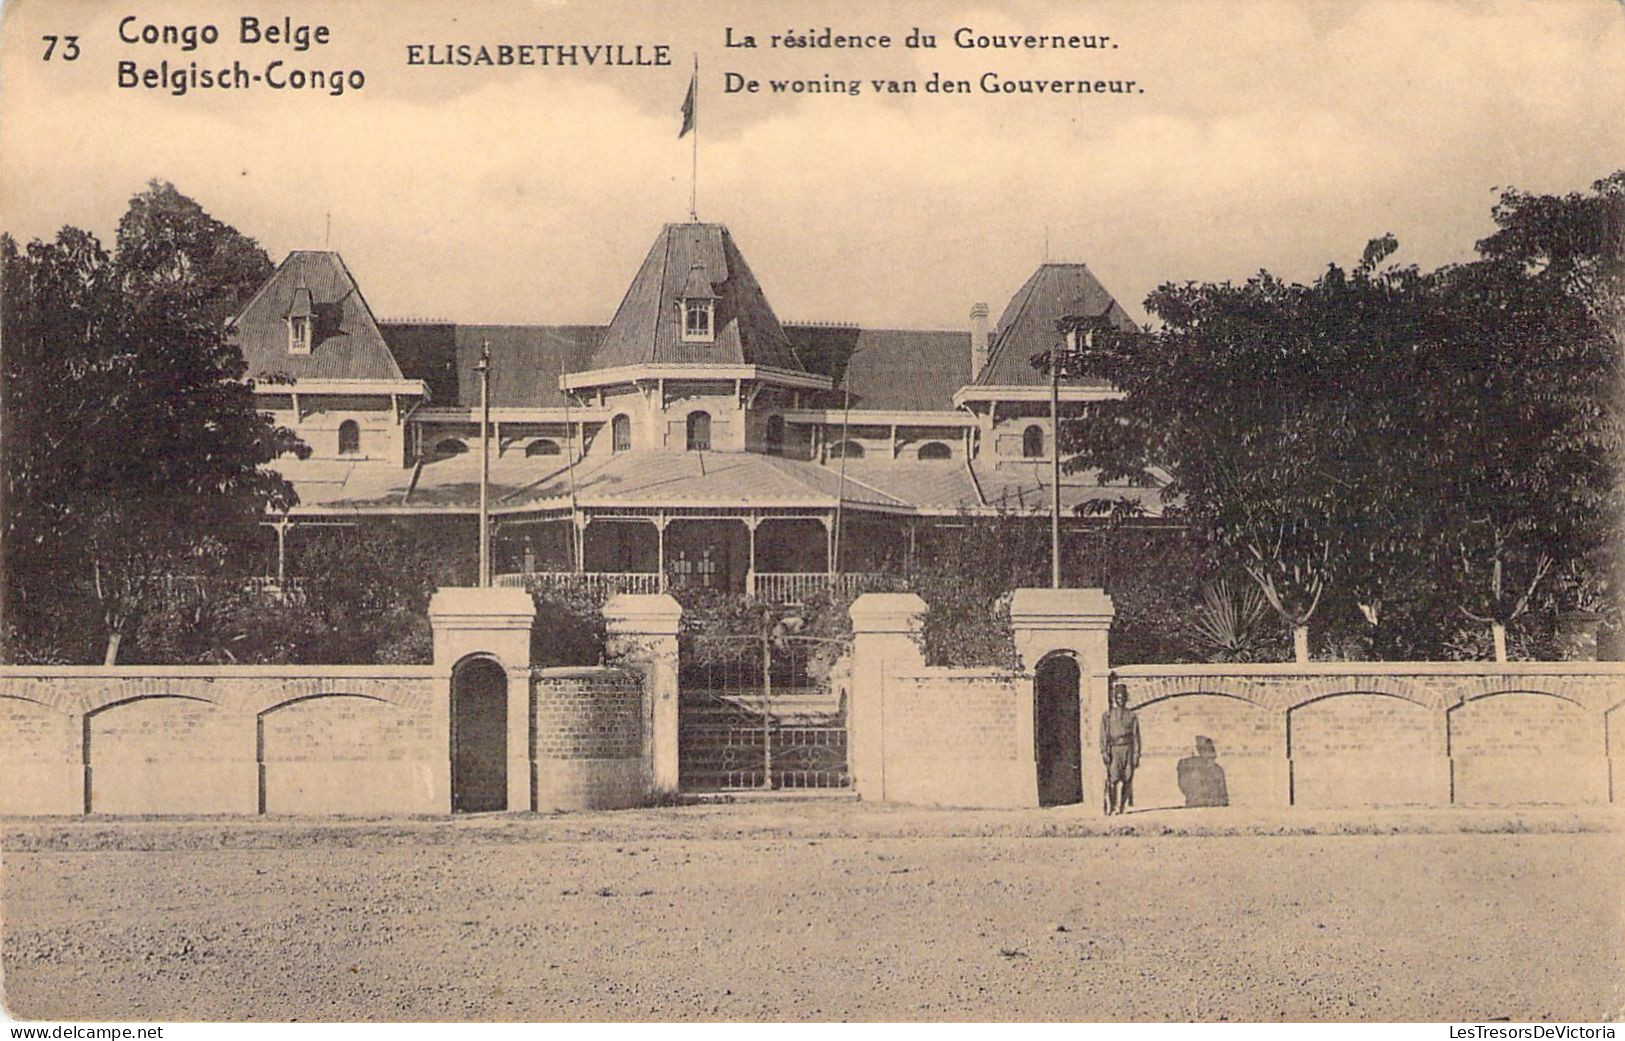 CONGO BELGE - Elisabethville - La Résidence Du Gouverneur - Carte Postale Ancienne - Congo Belga